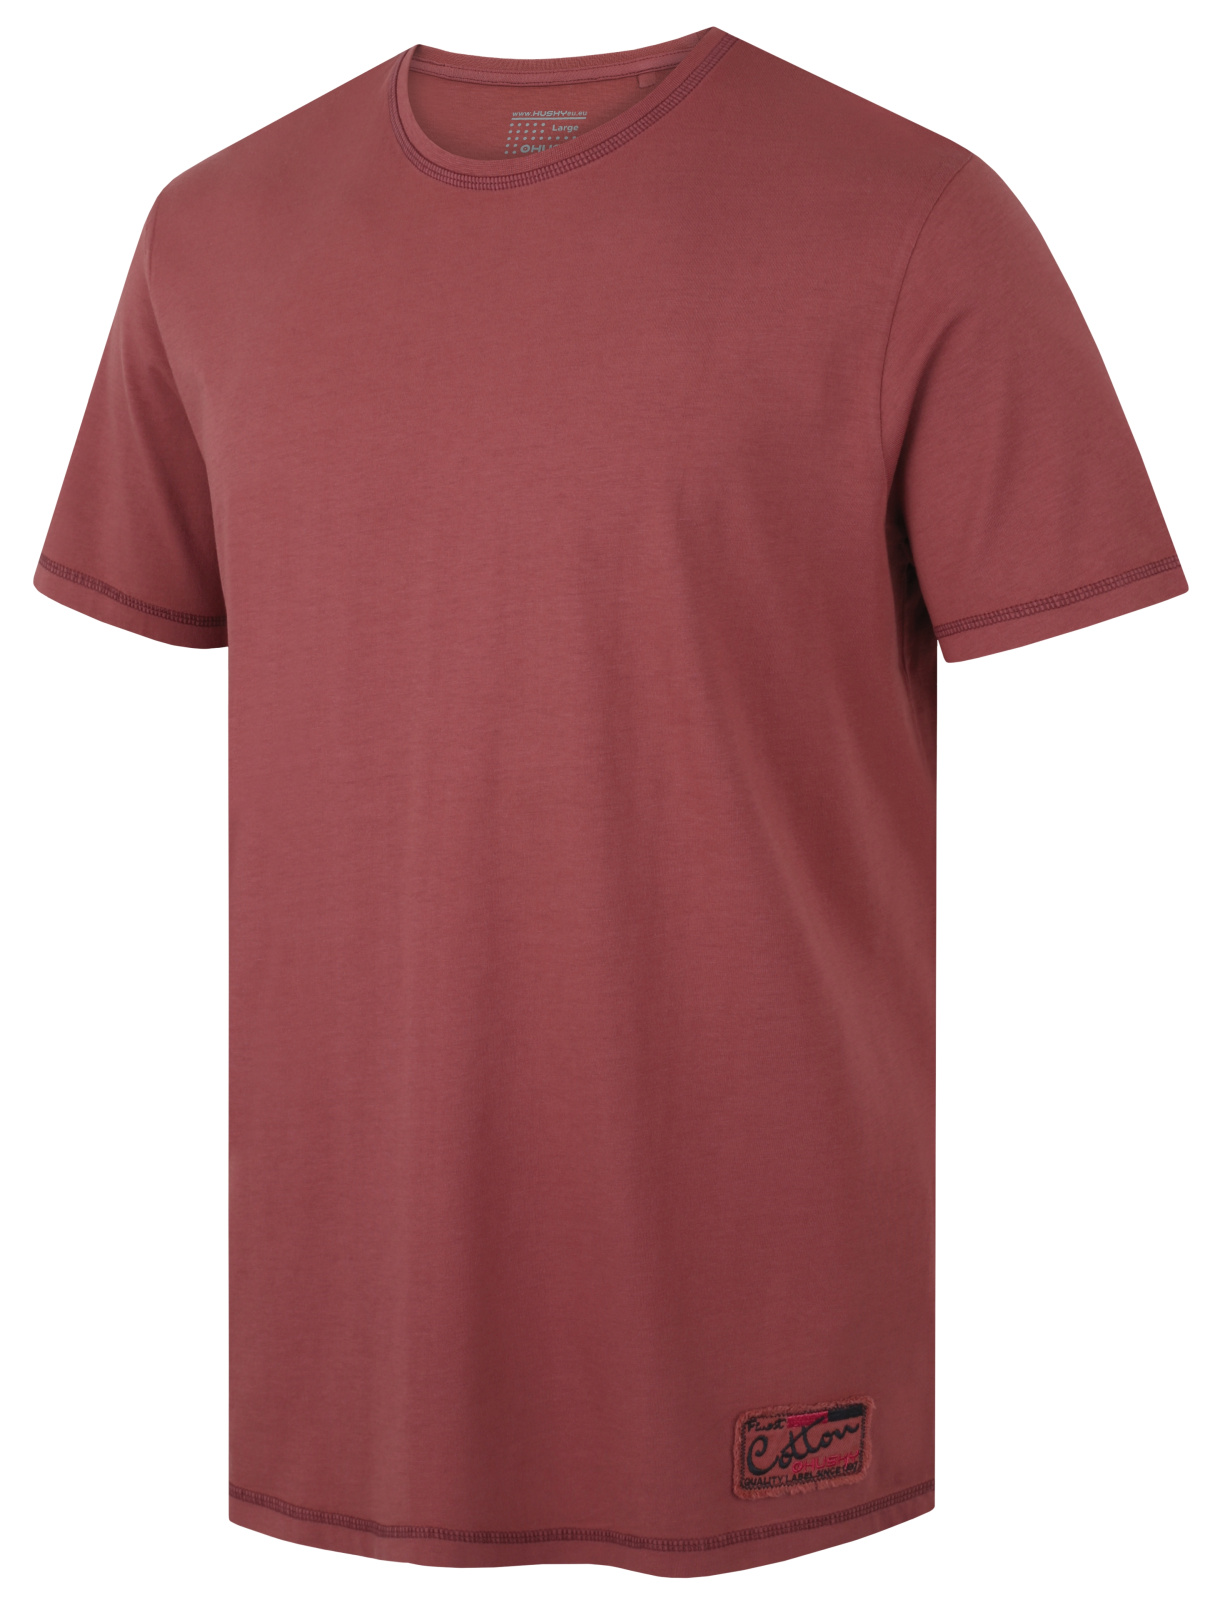 Husky Pánské bavlněné triko Tee Base M dark bordo Velikost: M pánské tričko s krátkým rukávem